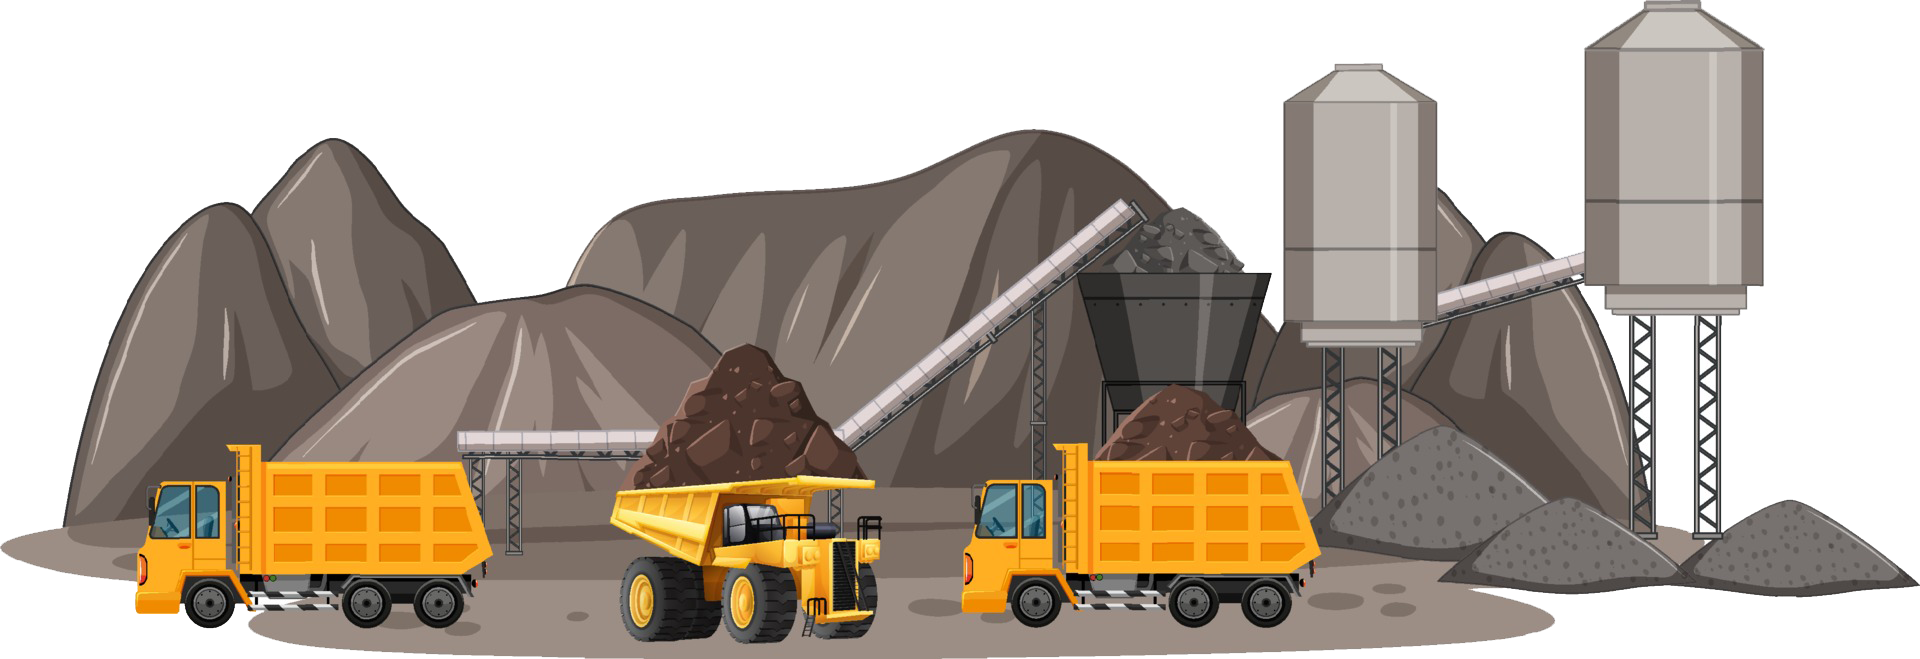 imagen referencial de minería